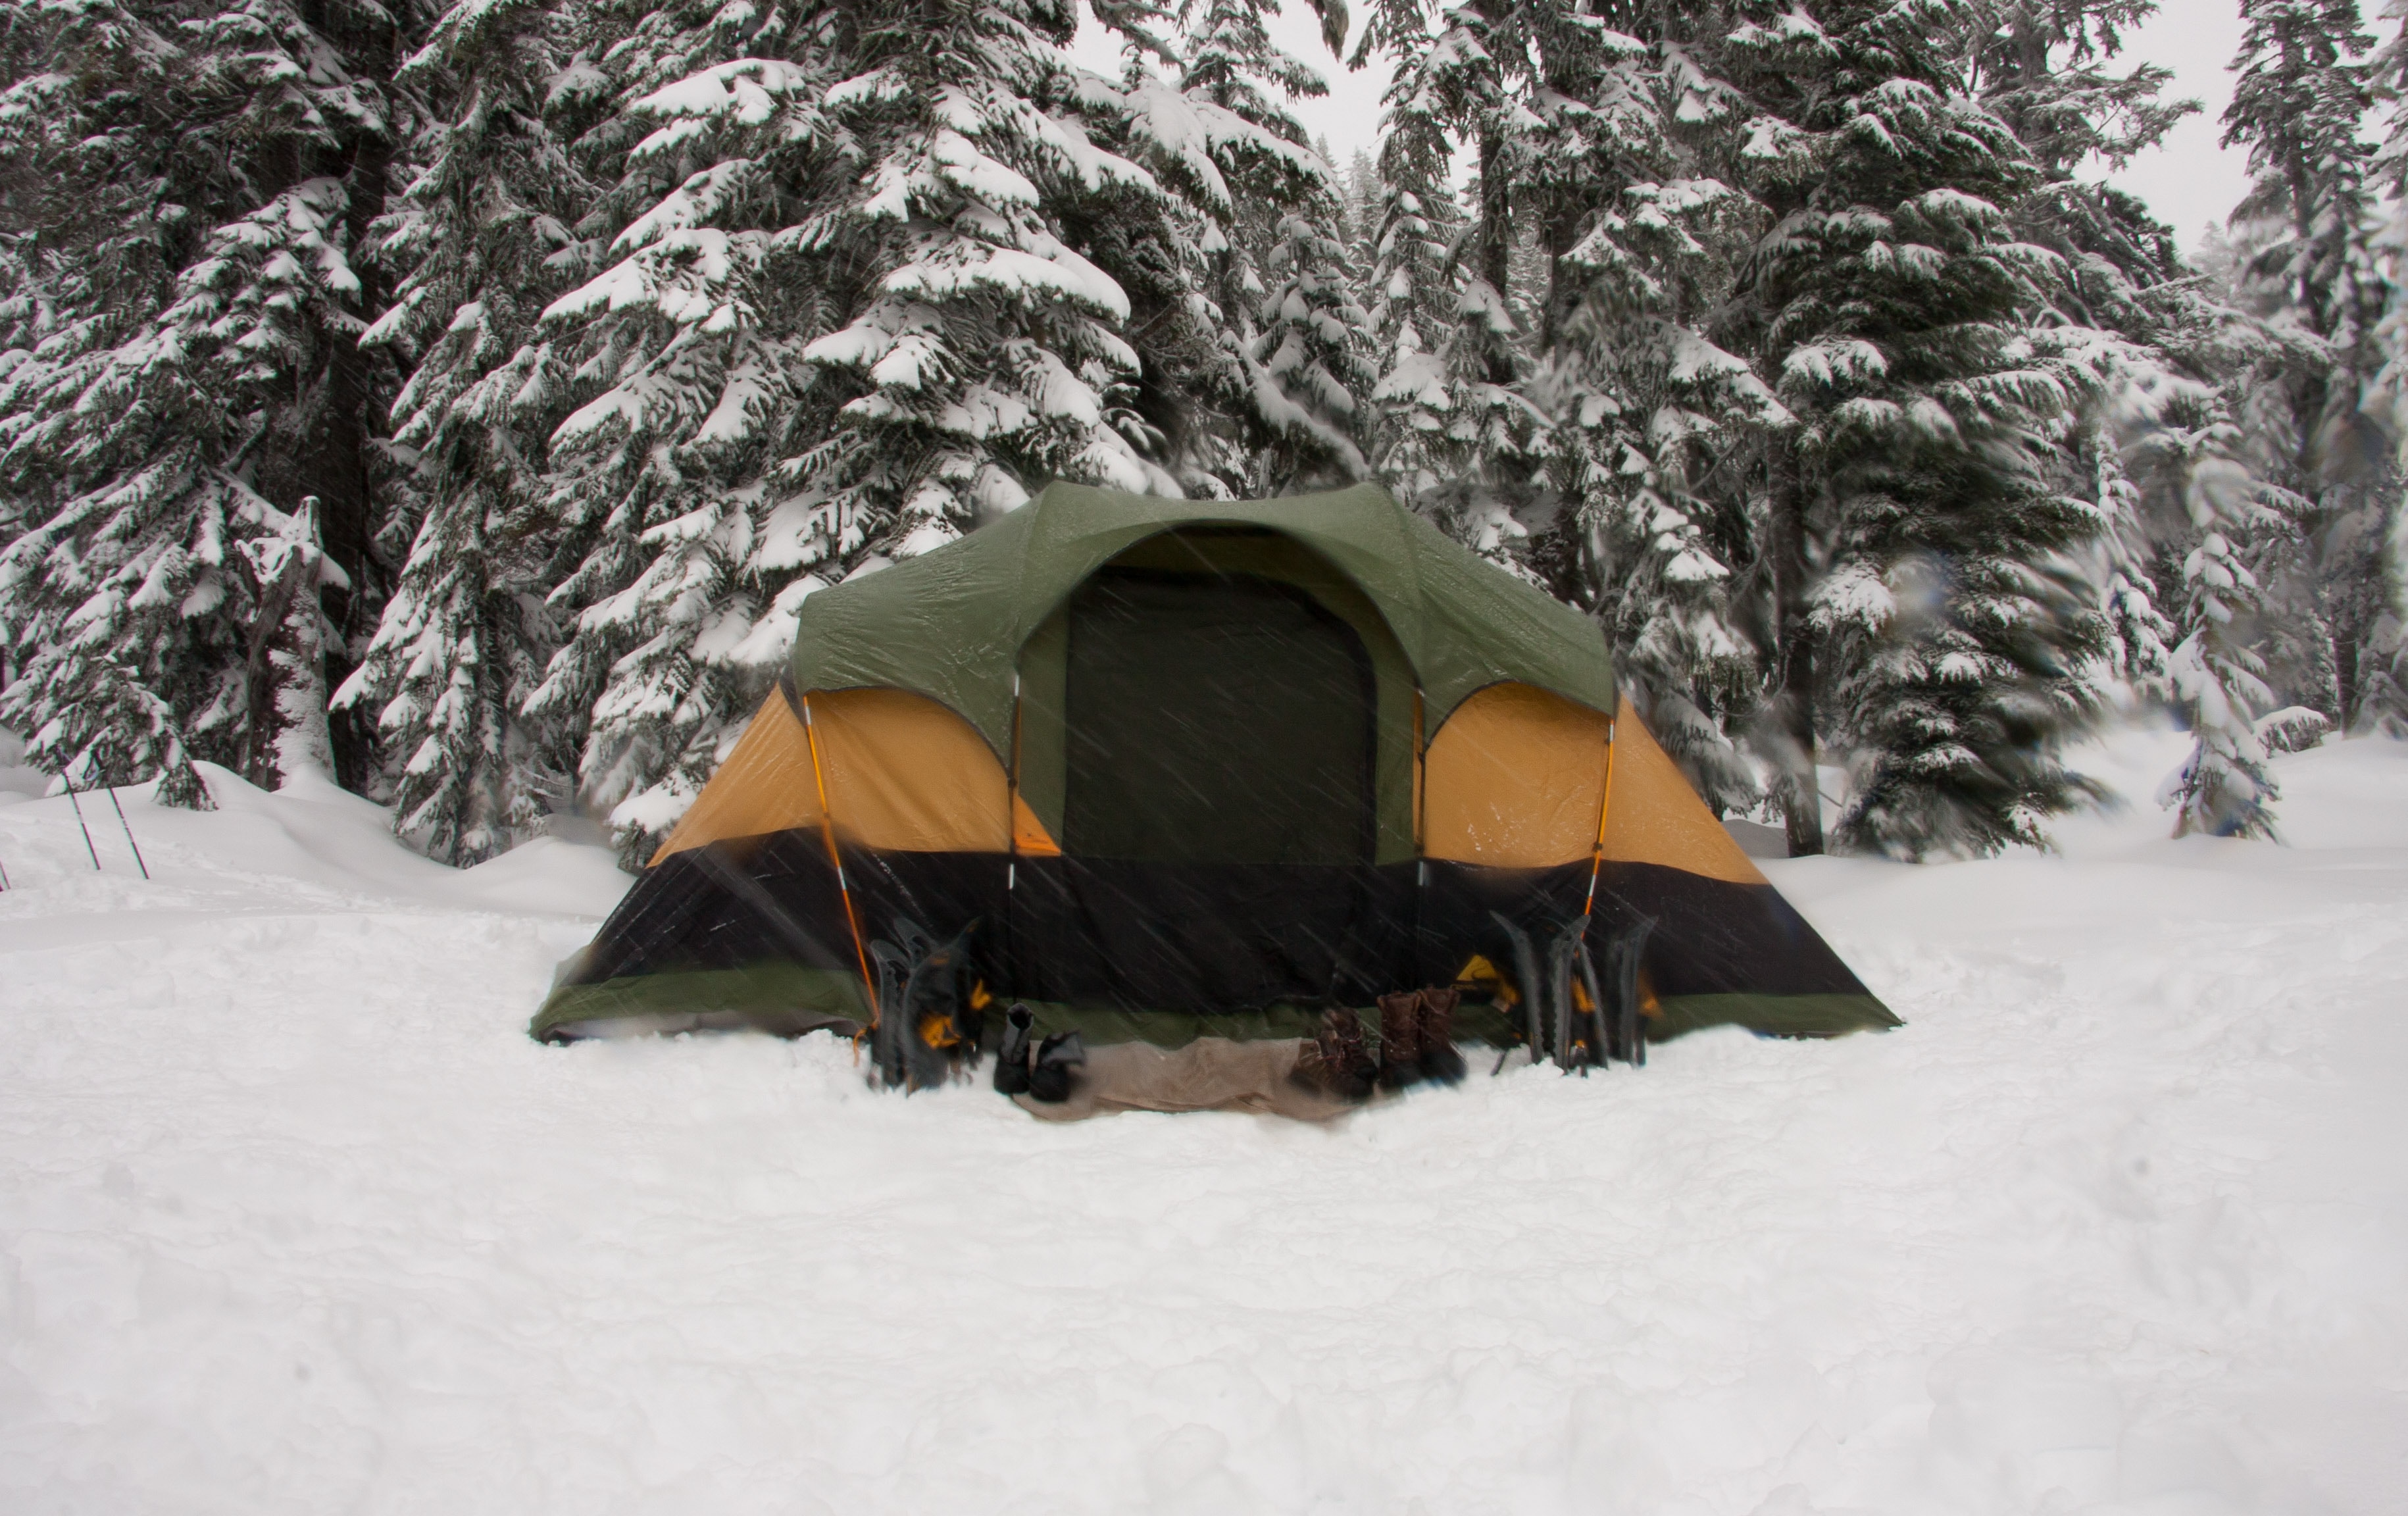 Camping rus. Палатка. Палатка в лесу. Палатка в снегу. Палатка зимой.